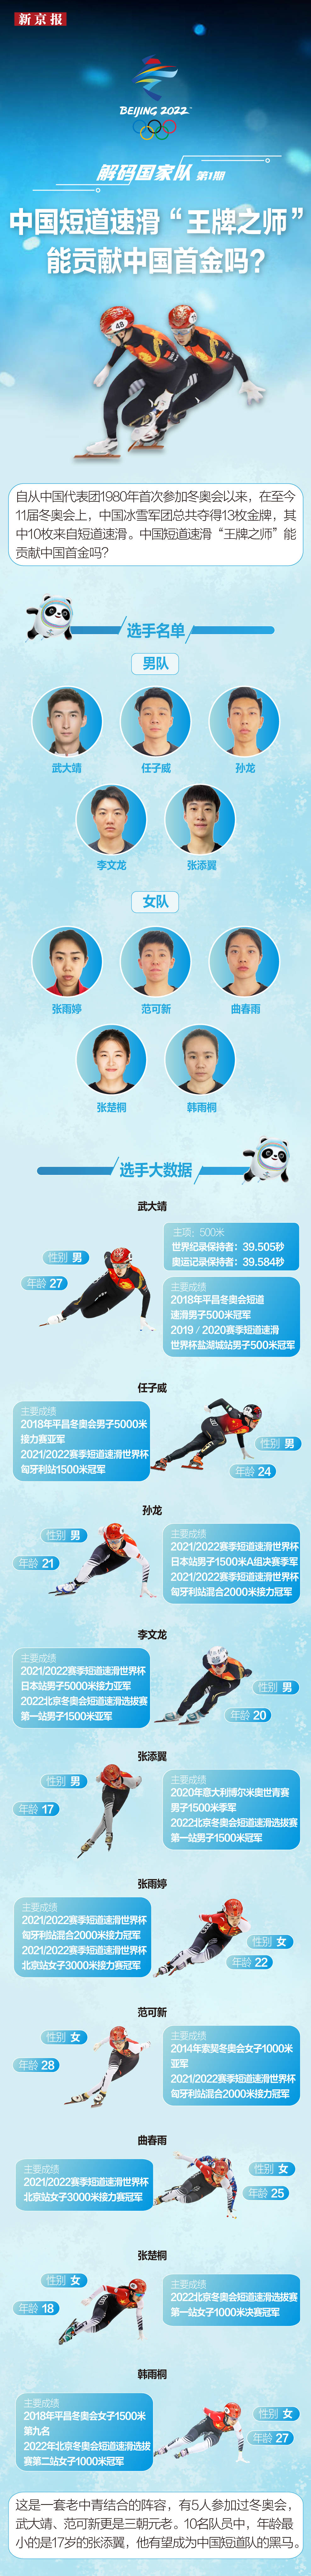 速滑|新闻8点见丨北京冬奥会中国体育代表团旗手确定